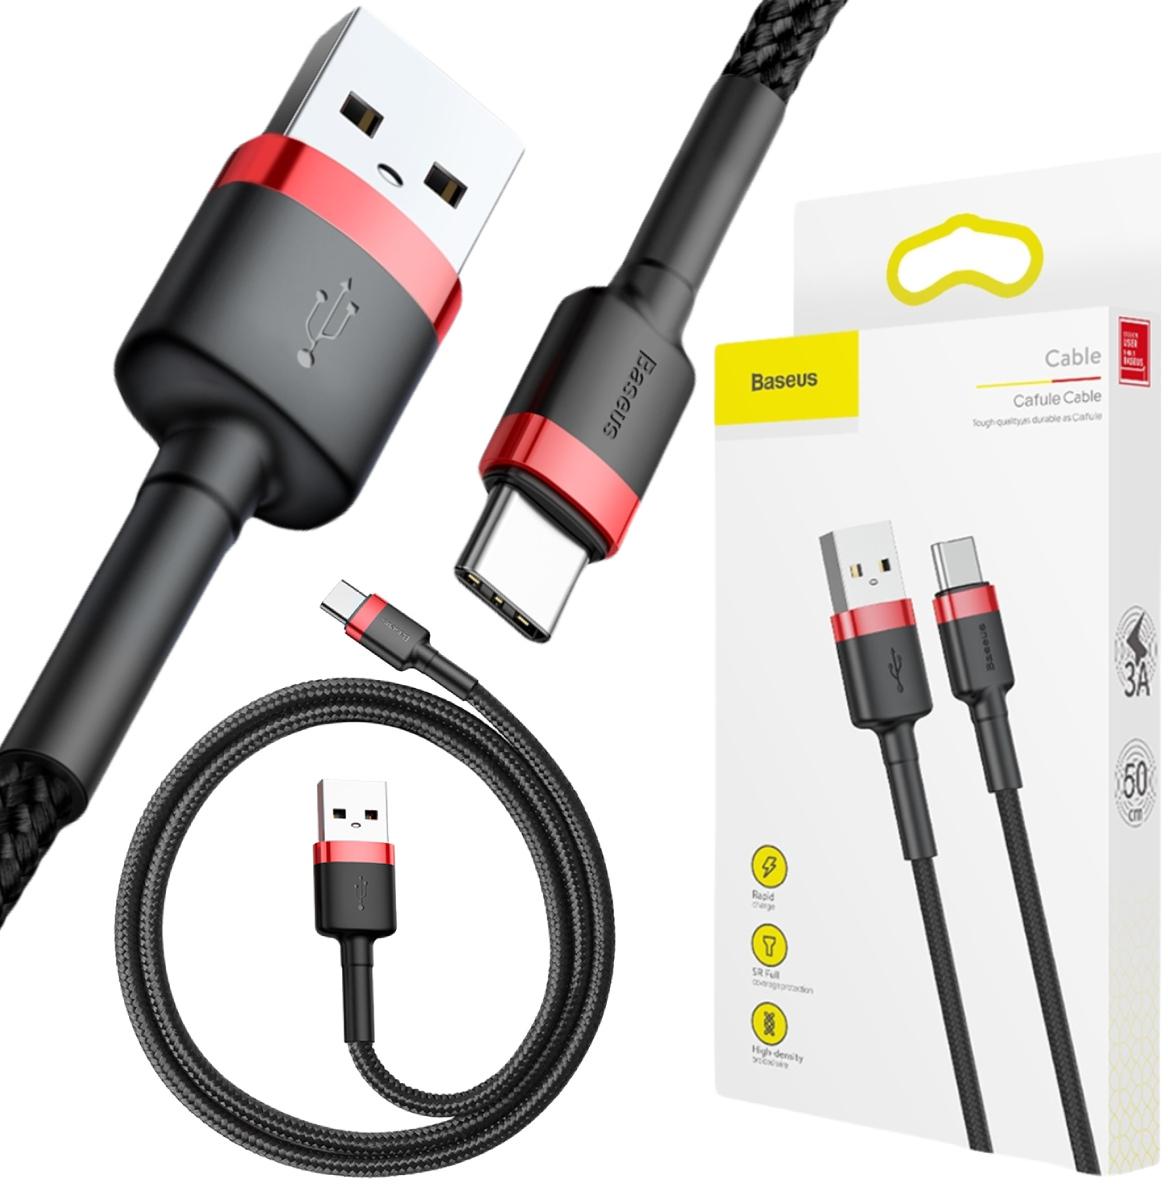 Baseus Cafule Cable kabel przewód USB / USB-C QC 3.0 3 A 0,5 m czarno-czerwony CATKLF-A91 – najważniejsze cechy: